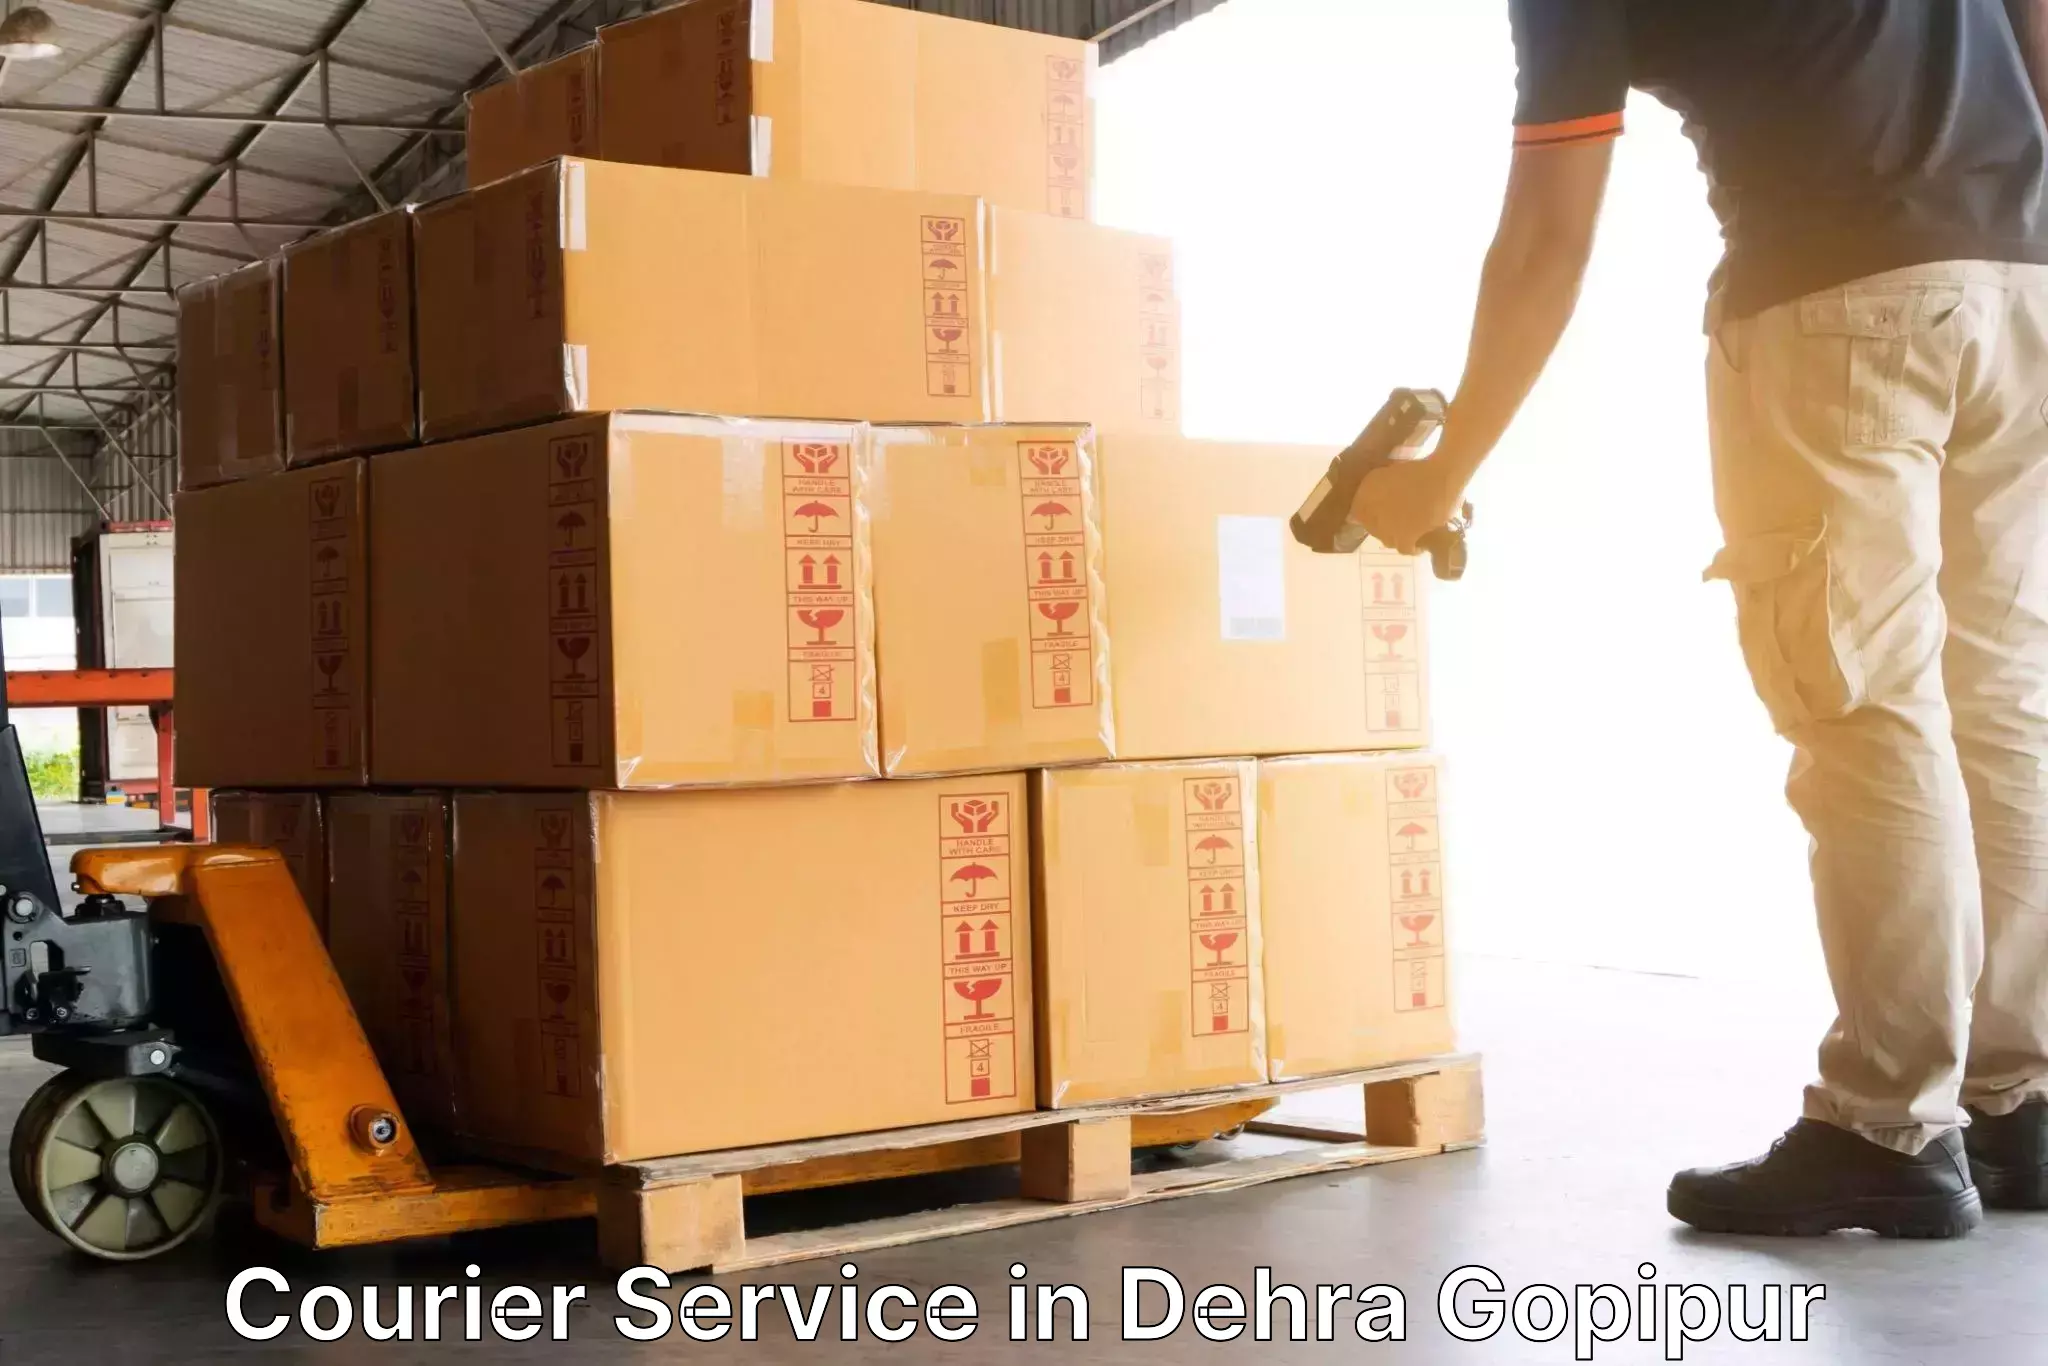 24/7 courier service in Dehra Gopipur